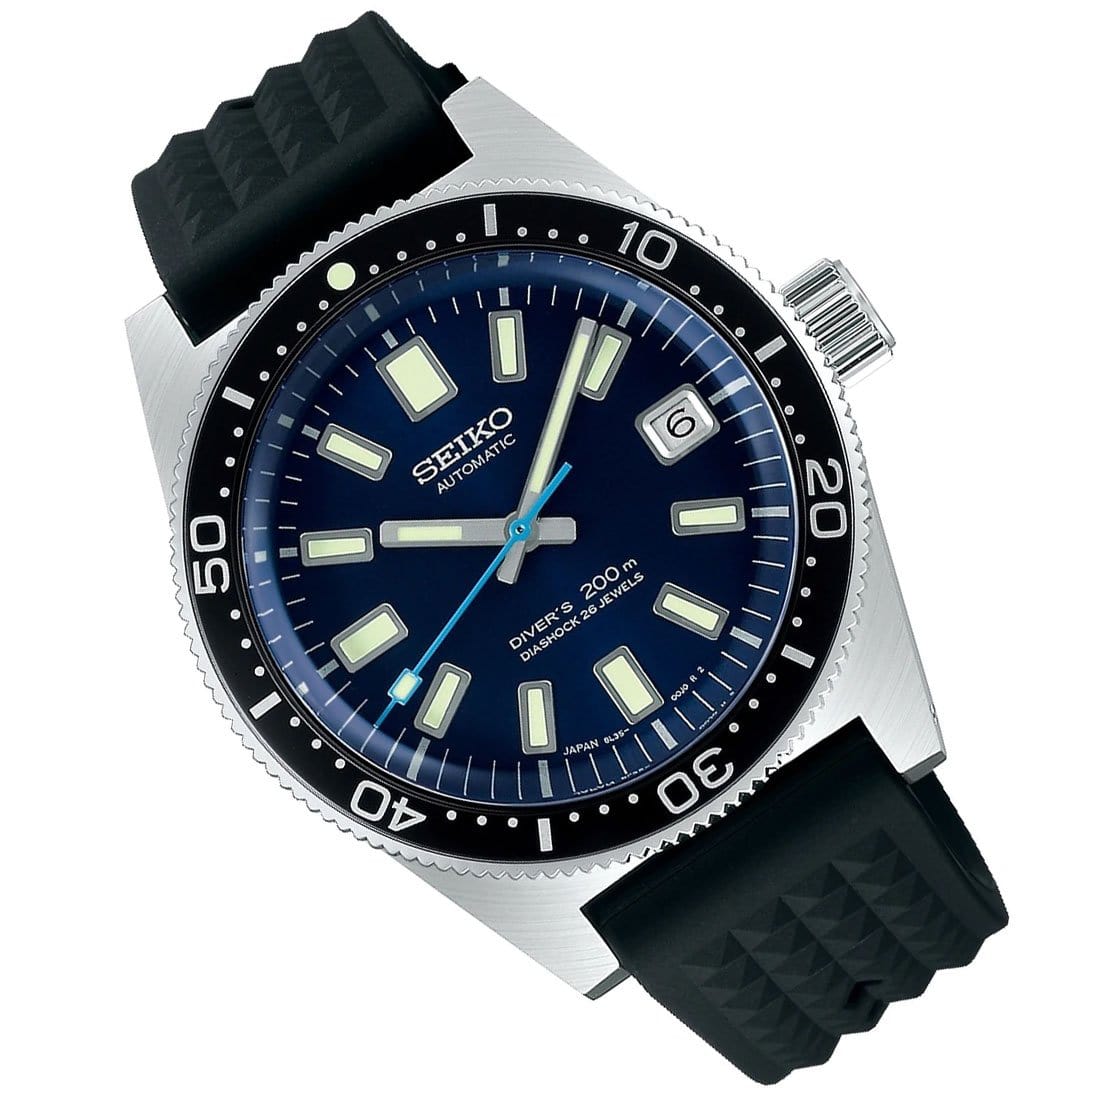 Seiko SBDX039 Prospex 55th Anniversary Limited Edition Automatic 26 Jewels JDM Watch